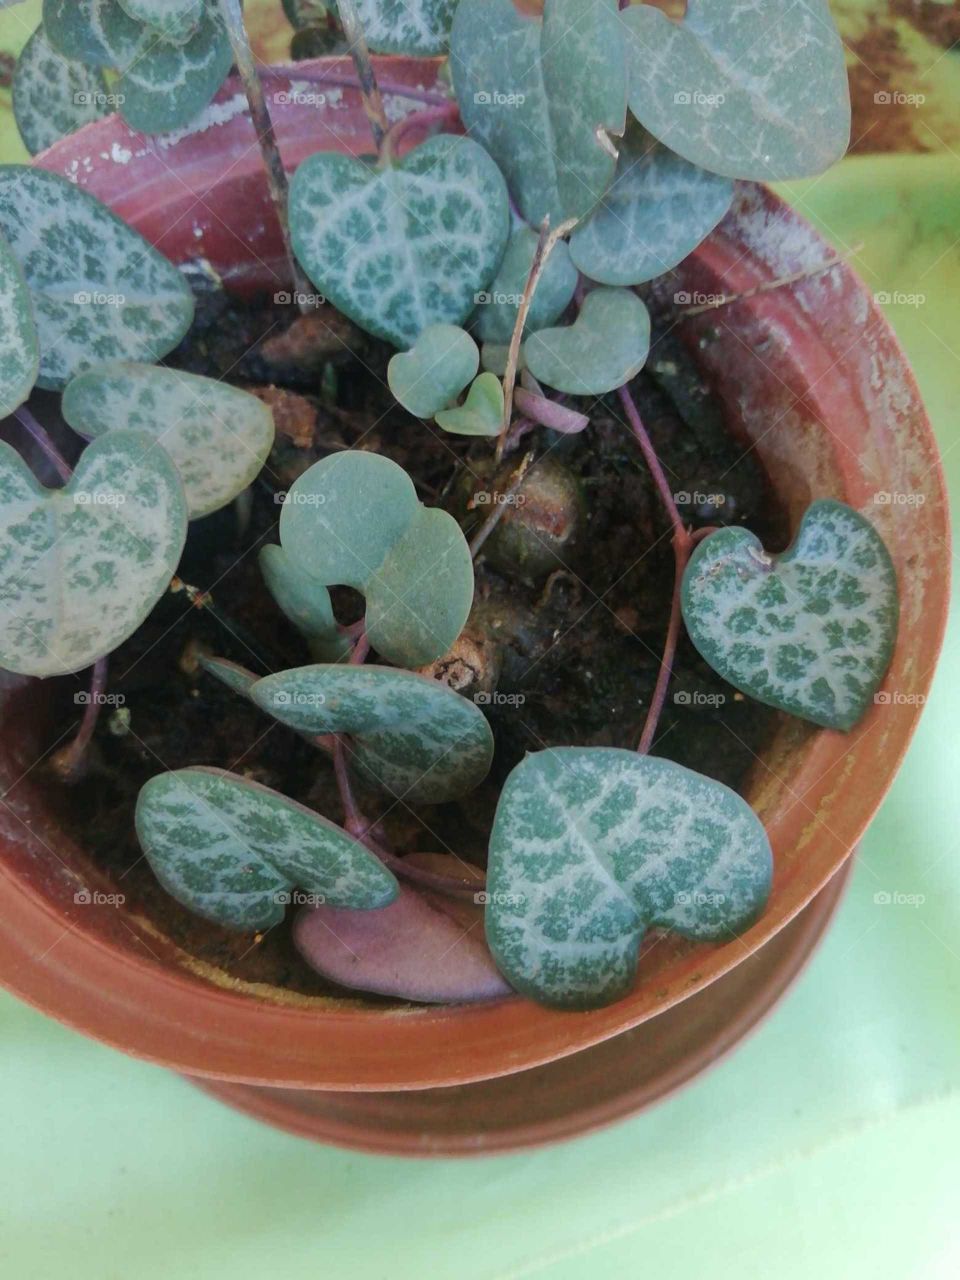 Pot plant